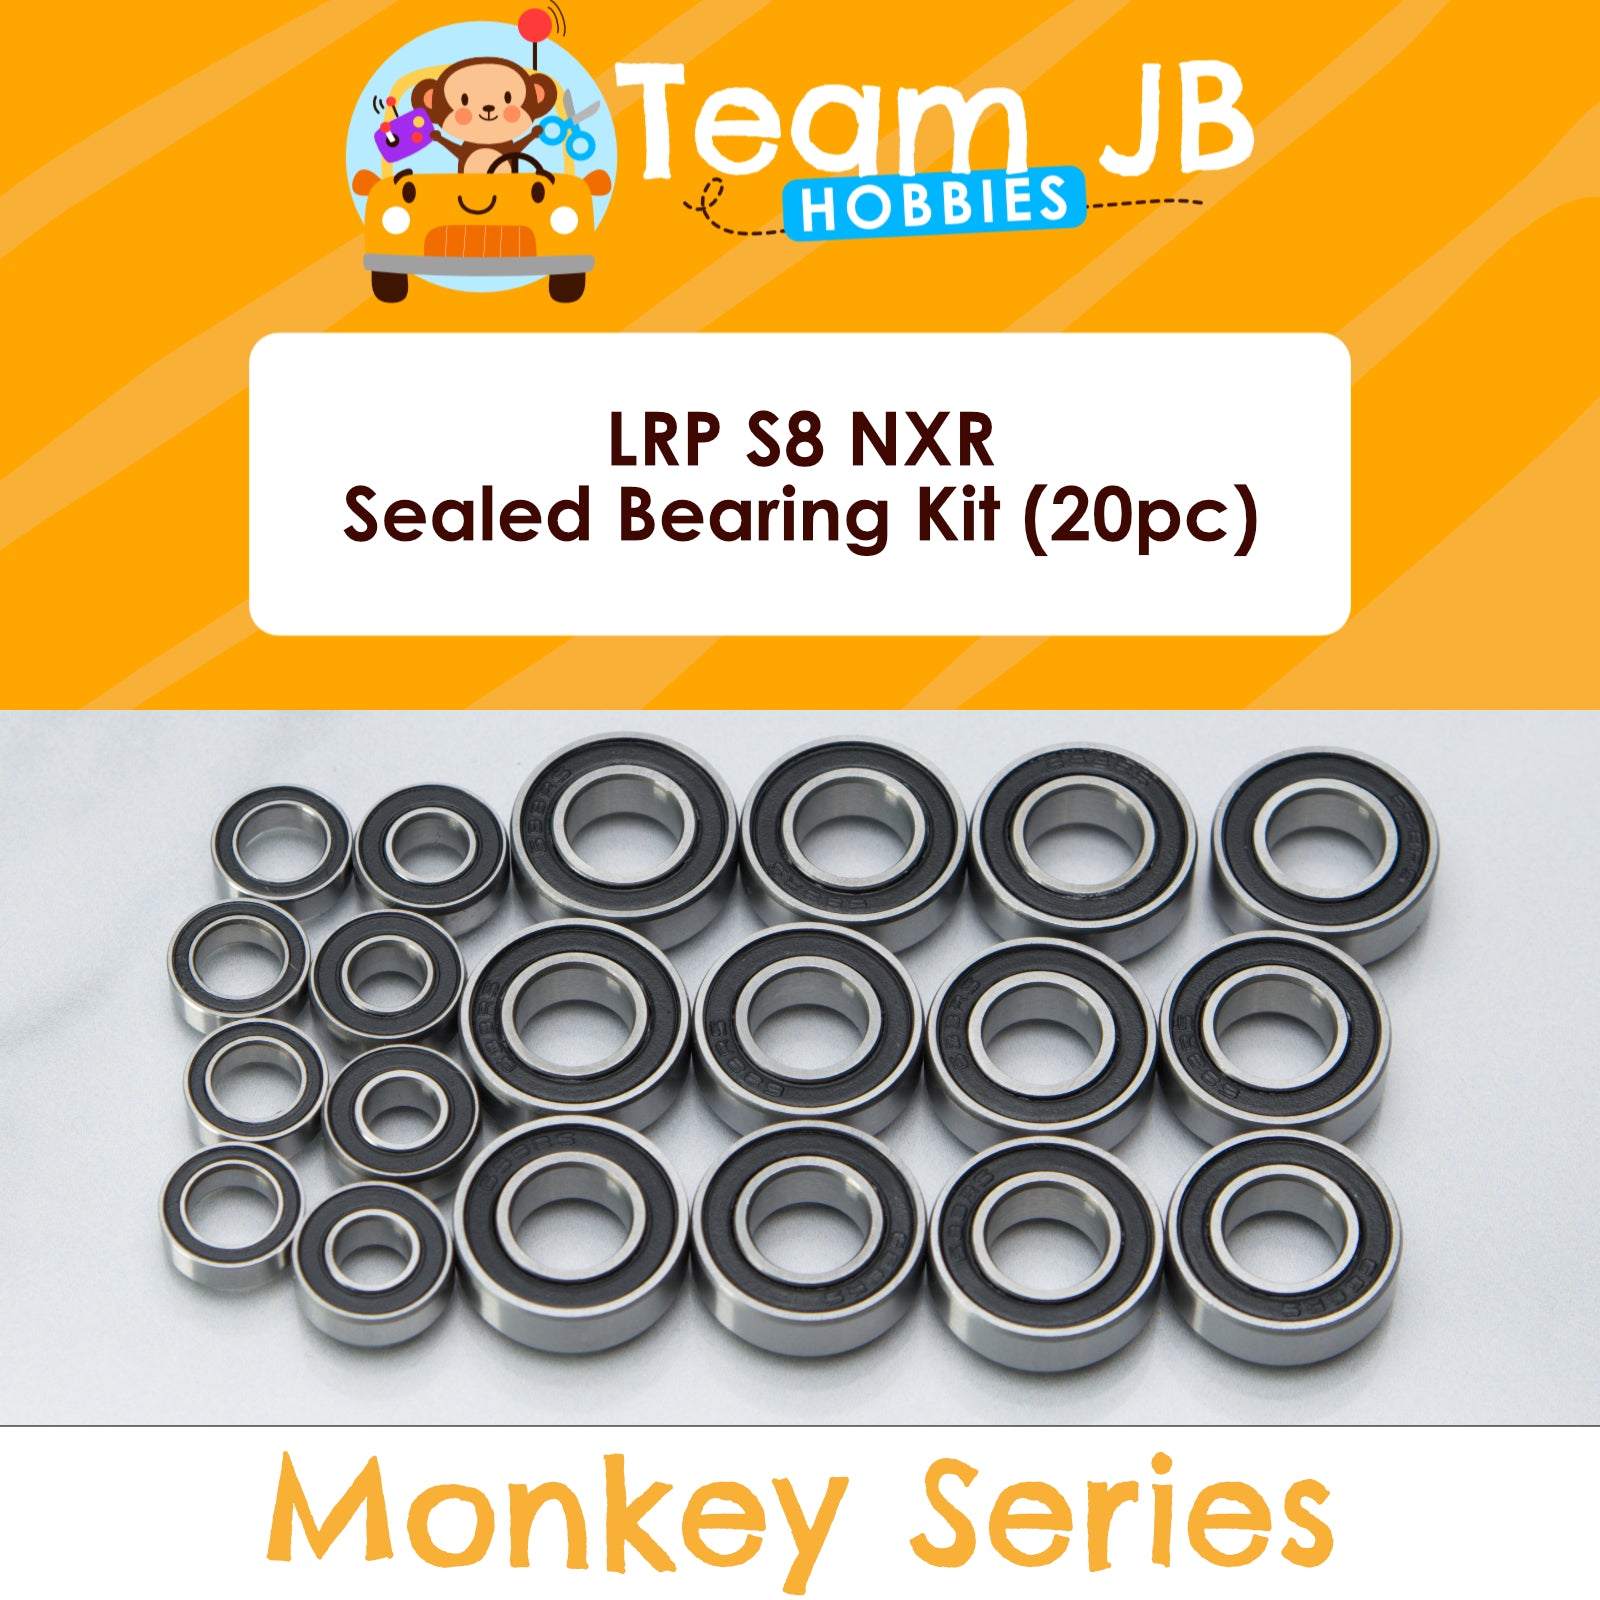 LRP S8 NXR - Sealed Bearing Kit